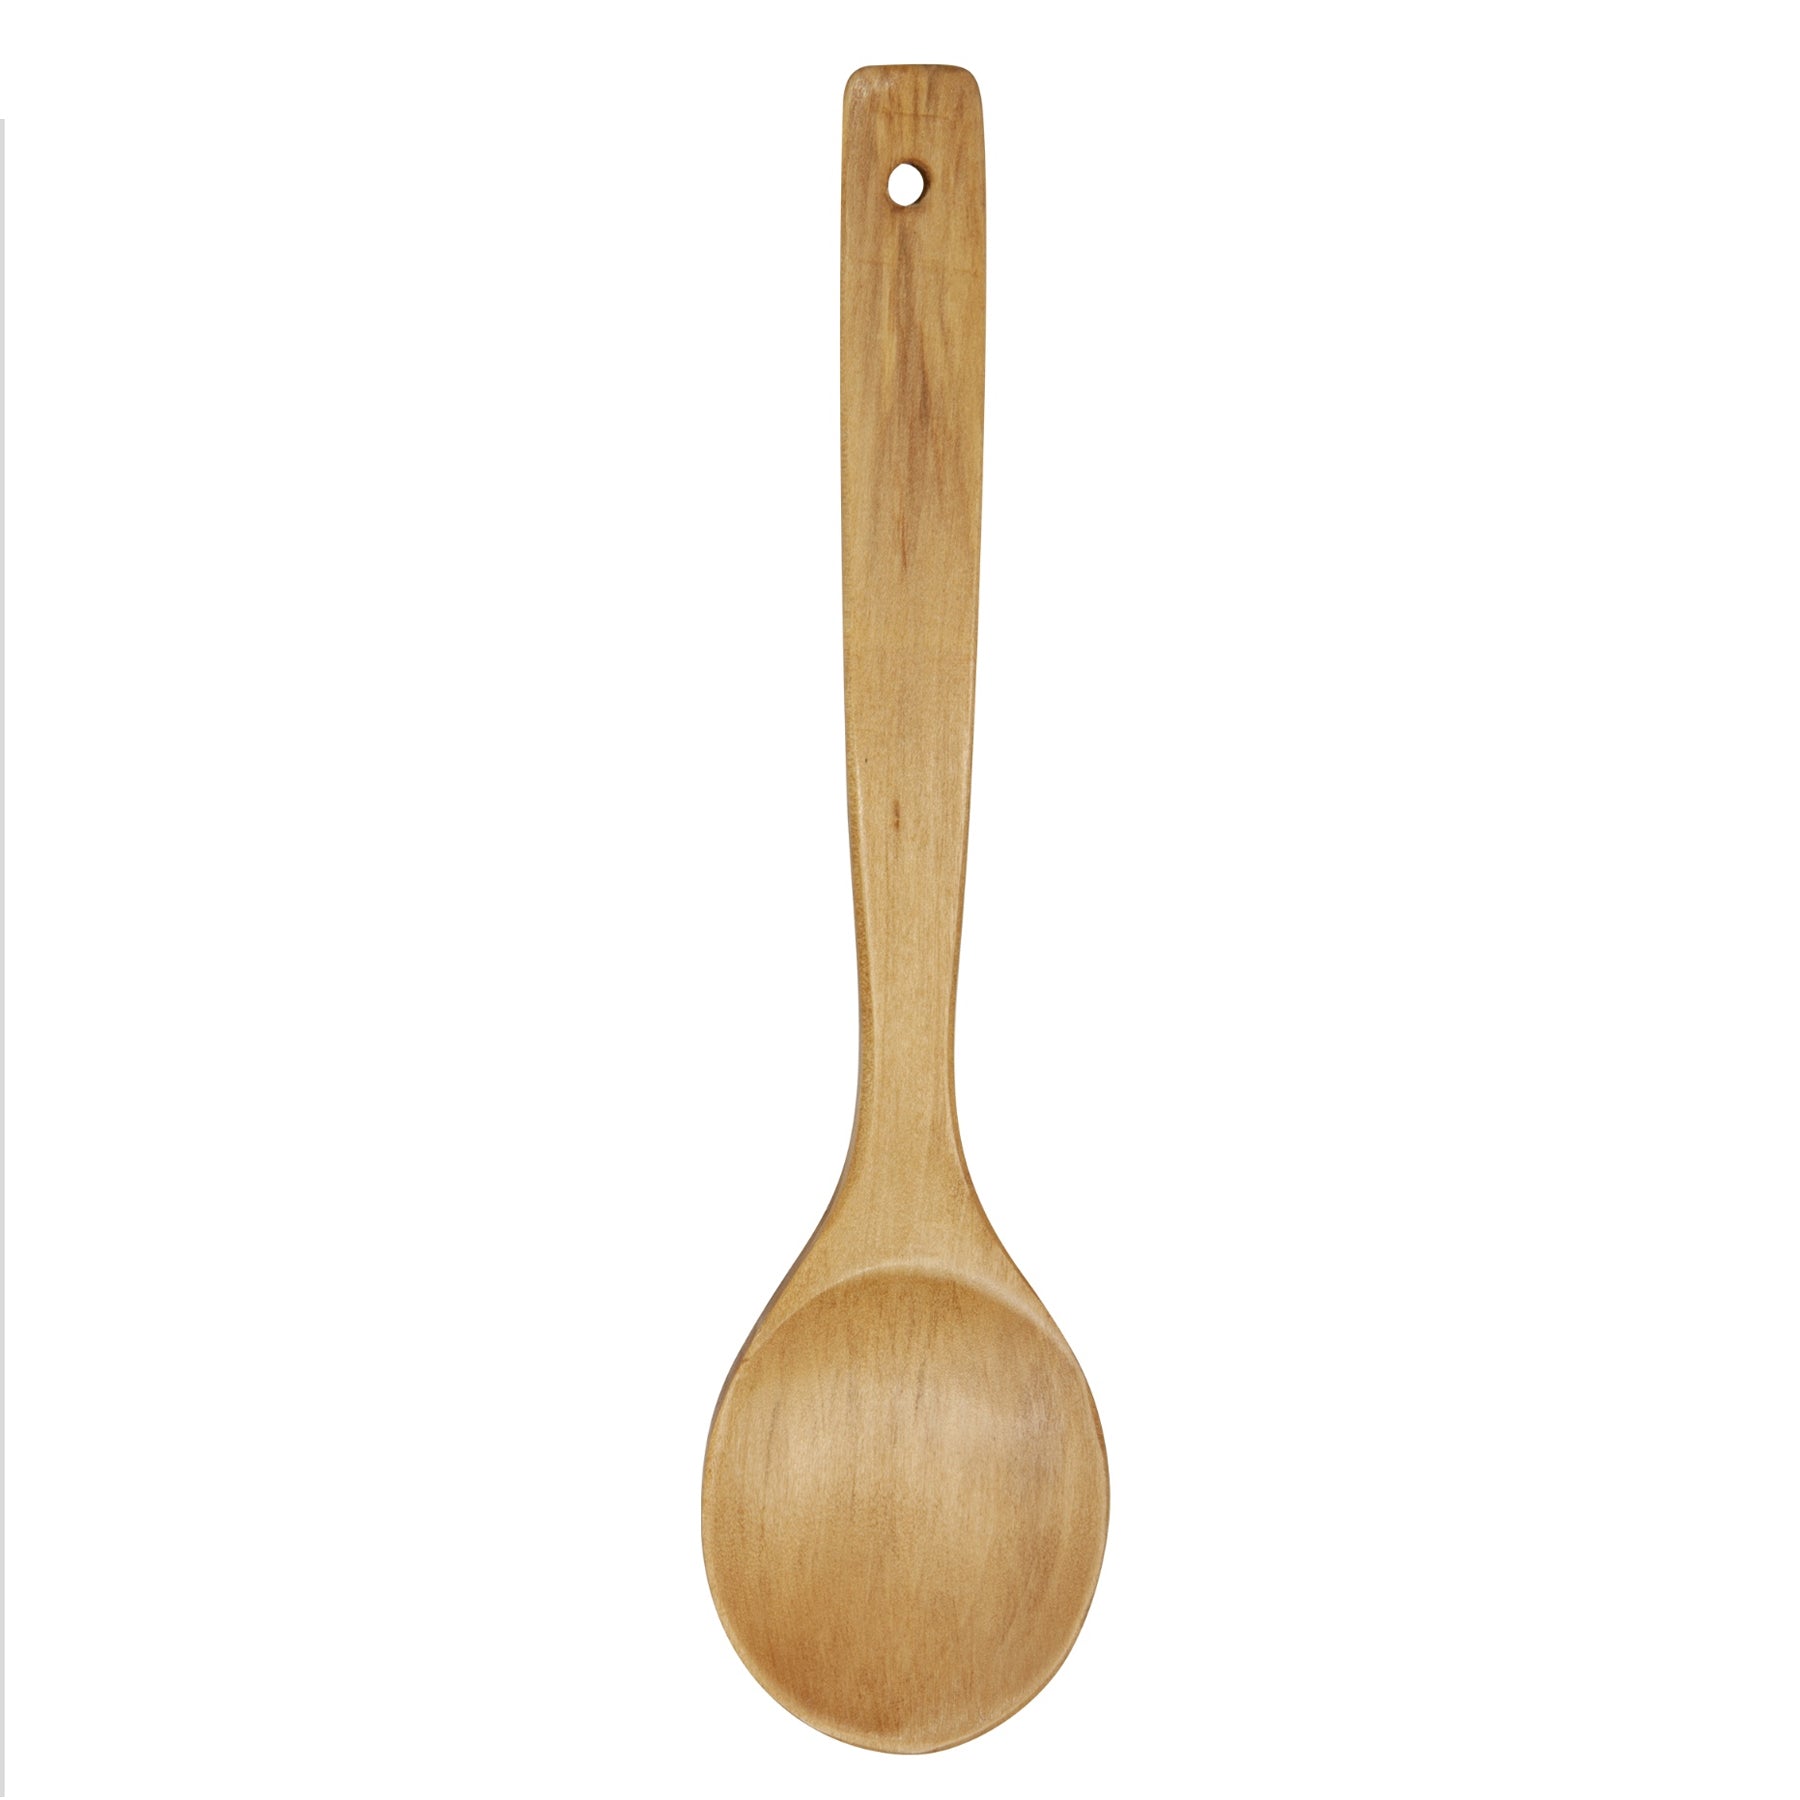 Durane Wooden Spoon - 14 inch